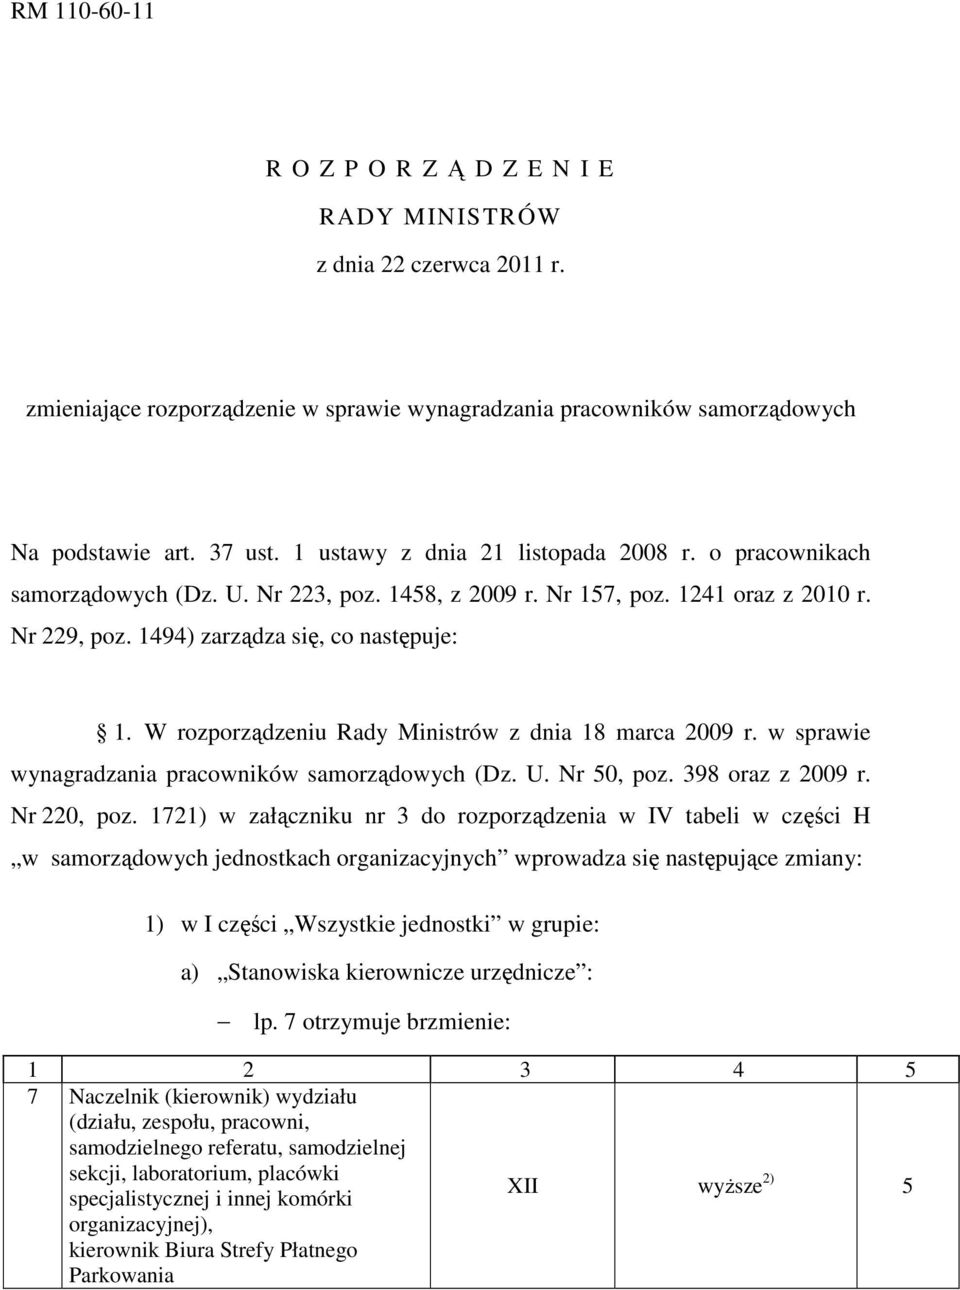 W rozporządzeniu Rady Ministrów z dnia 18 marca 2009 r. w sprawie wynagradzania pracowników samorządowych (Dz. U. Nr 50, poz. 398 oraz z 2009 r. Nr 220, poz.